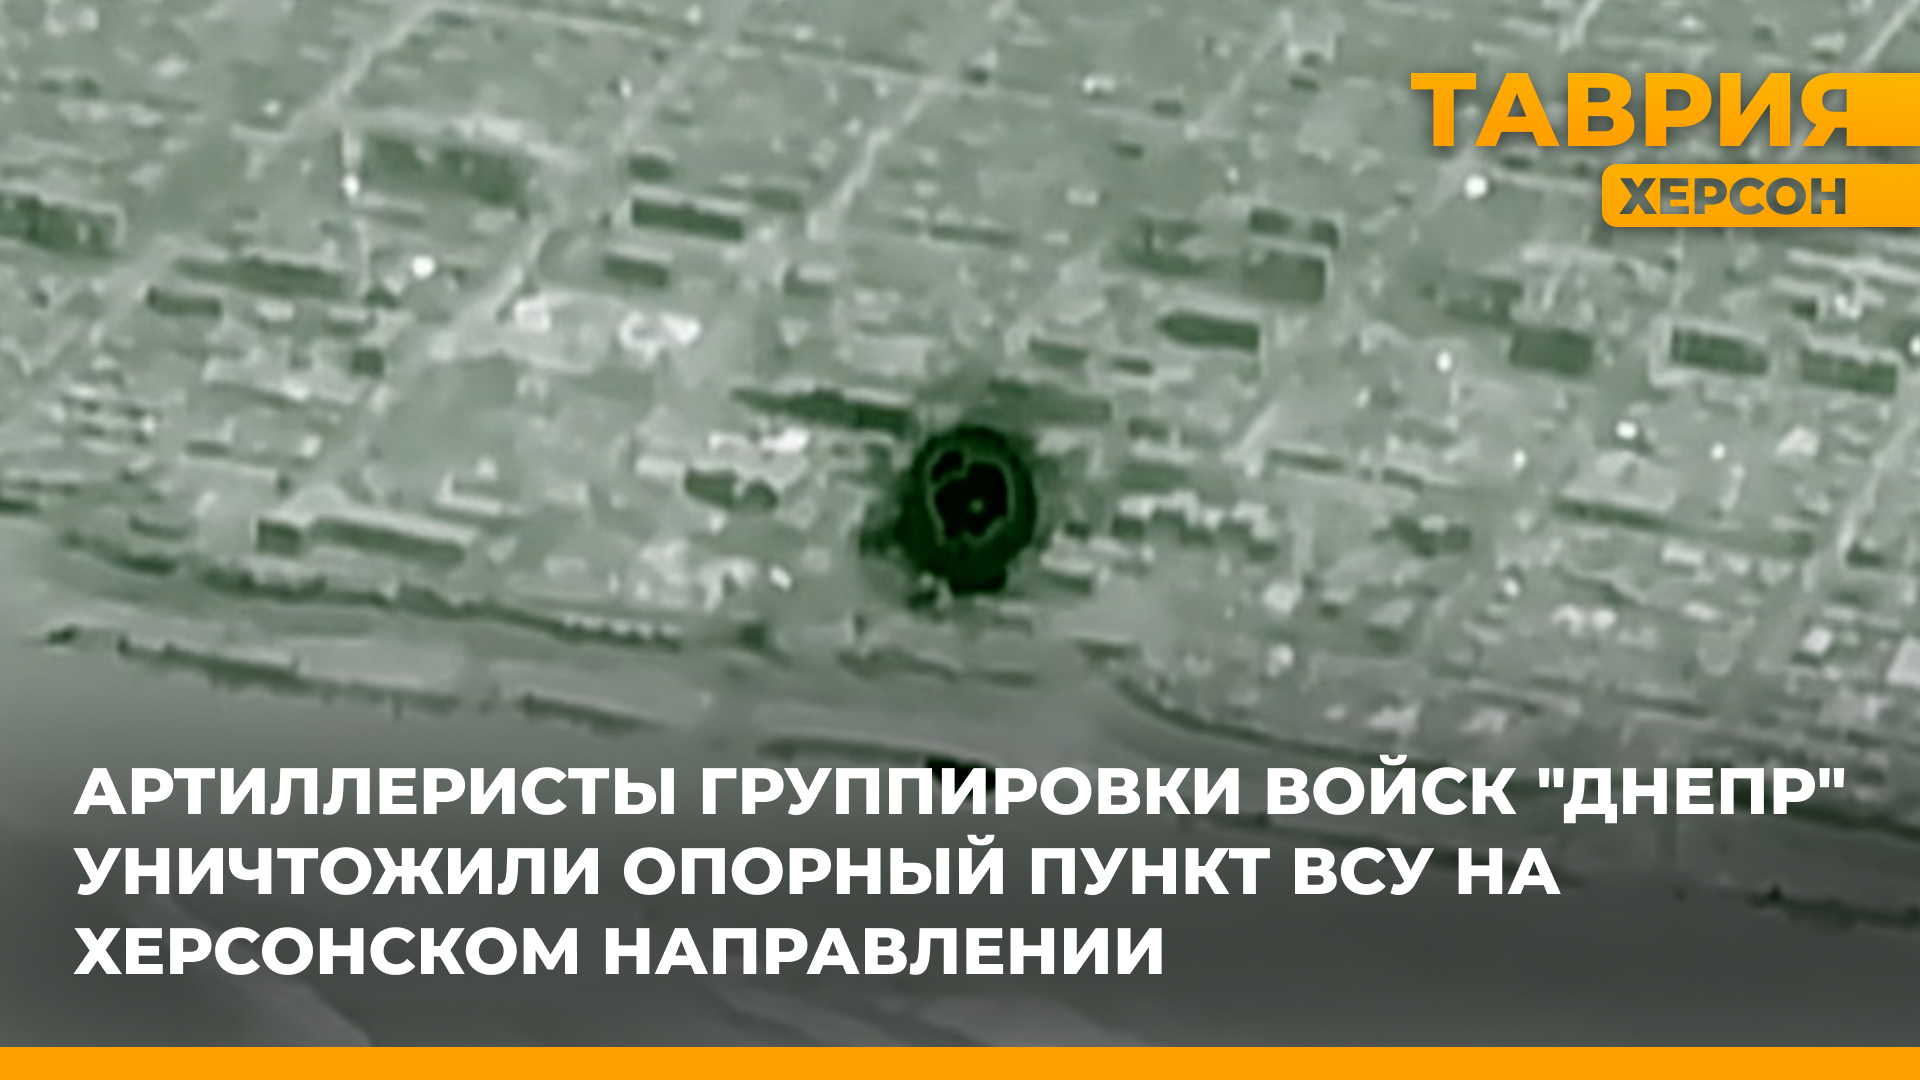 Артиллеристы группировки войск "Днепр" уничтожили опорный пункт ВСУ на Херсонском направлении